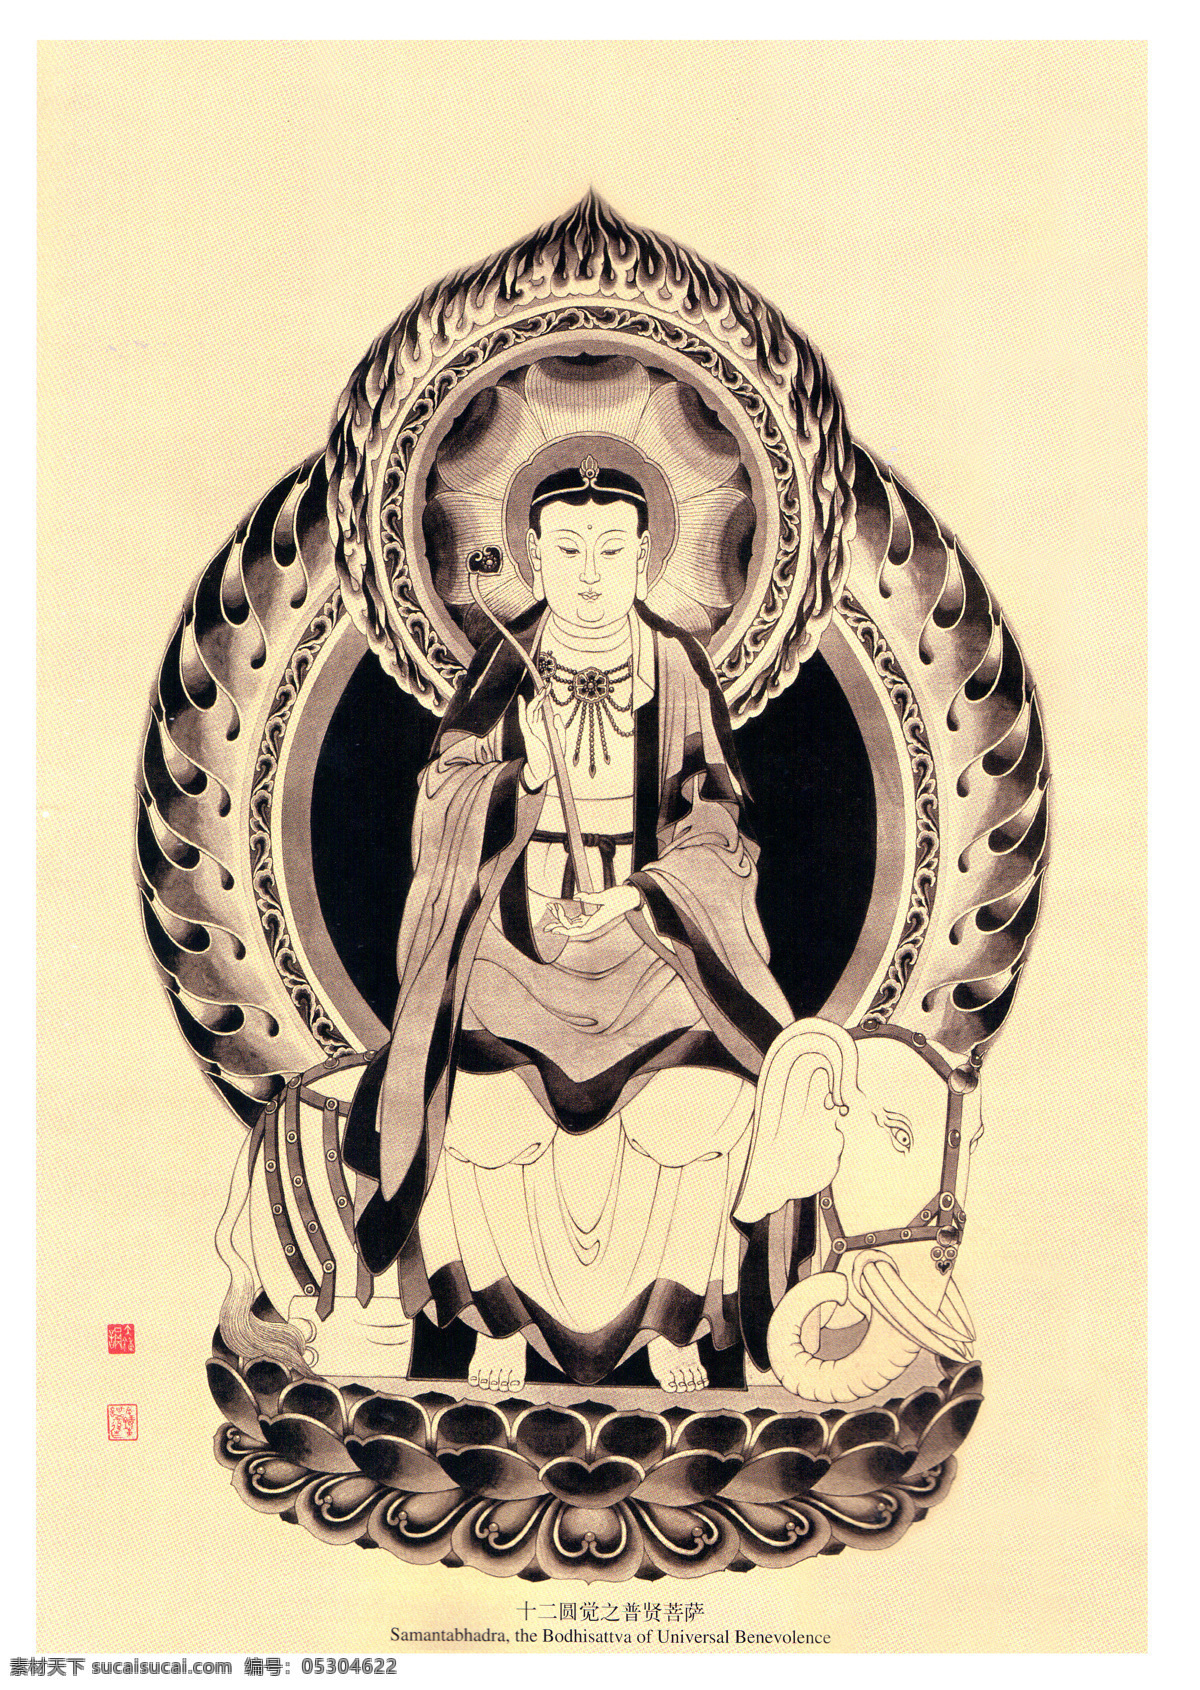 佛像画集 余钟韵工笔画 黑白画 佛教图片 观音 菩萨 罗汉 佛教系列 宗教信仰 文化艺术